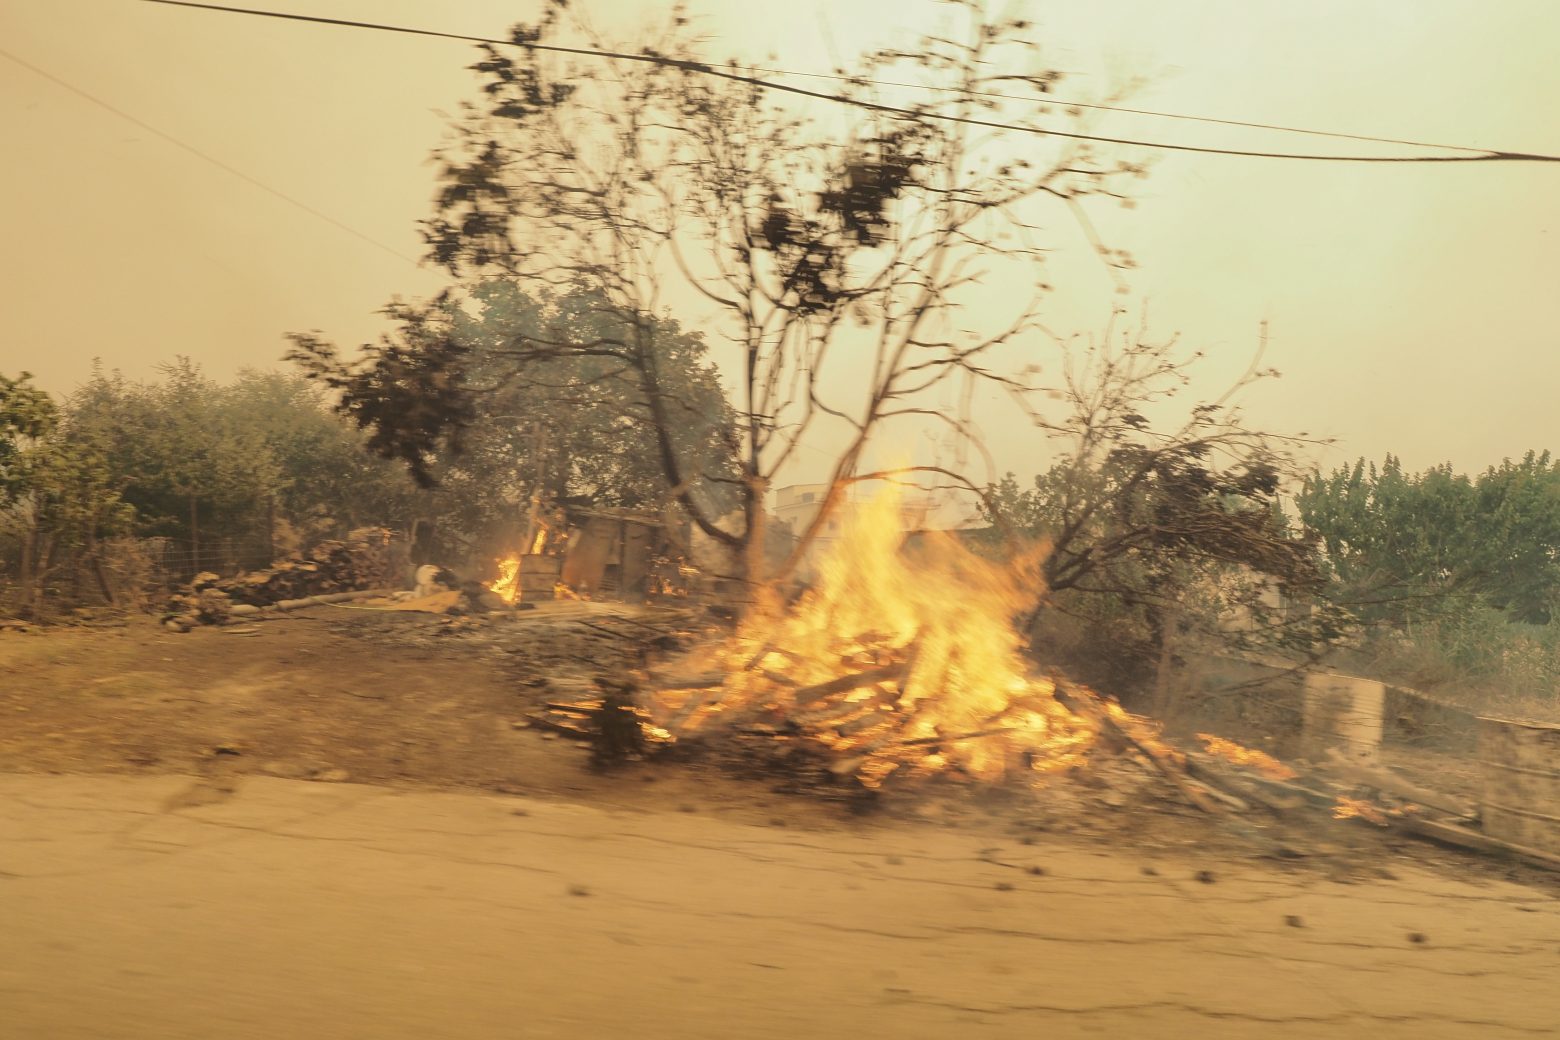 Μεγάλη φωτιά και στη Μεσσηνία - Εκκενώνονται χωριά - Μήνυμα του 112